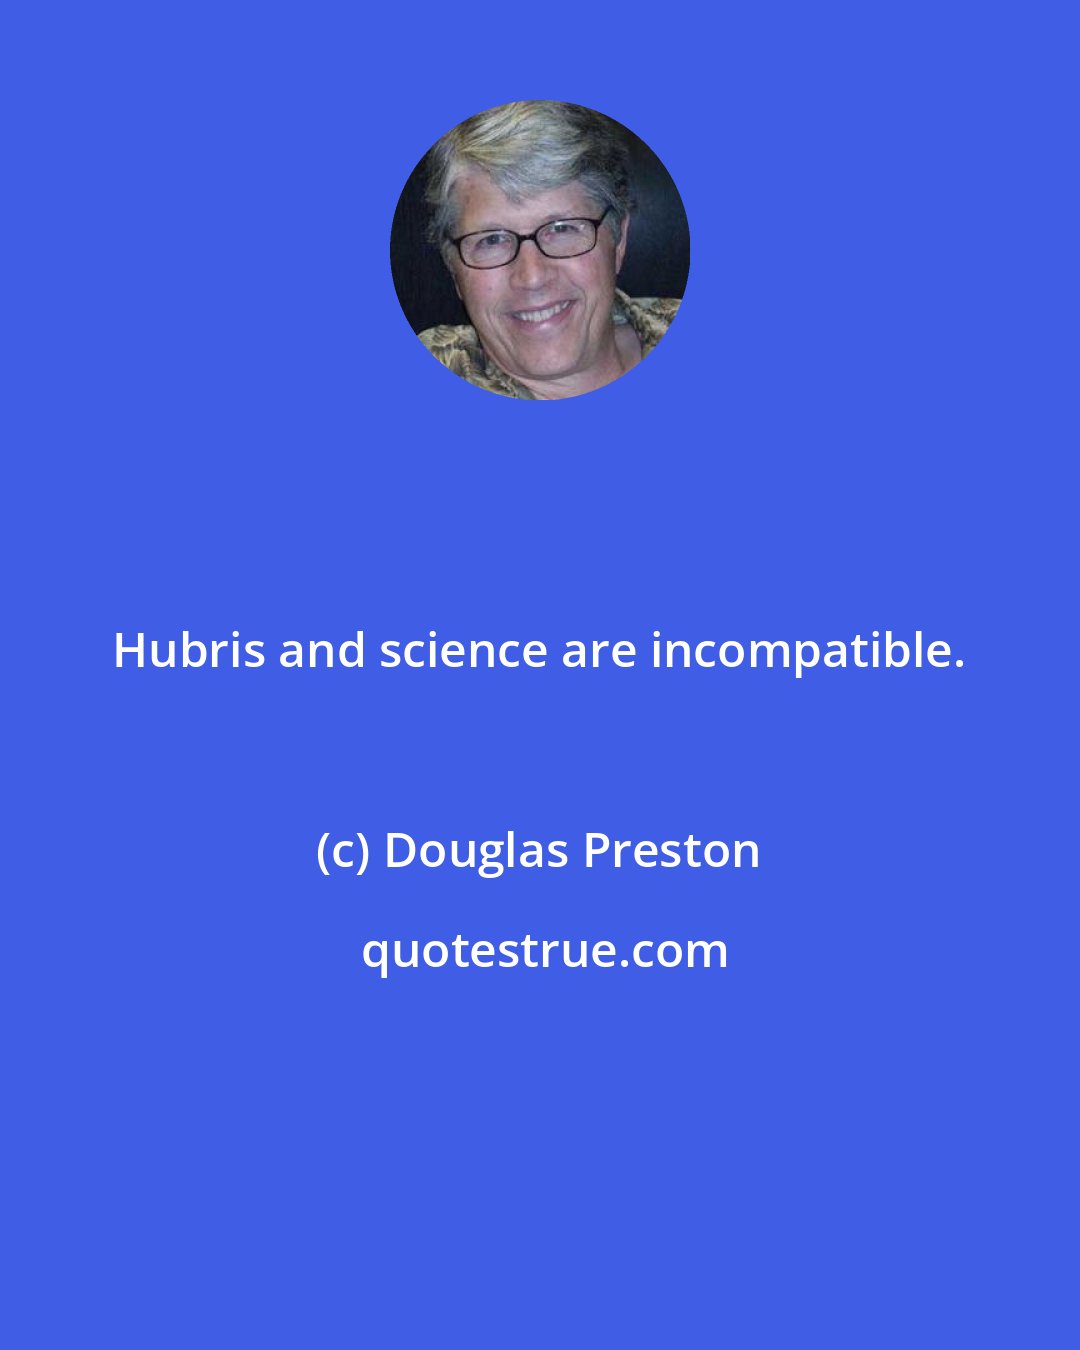 Douglas Preston: Hubris and science are incompatible.